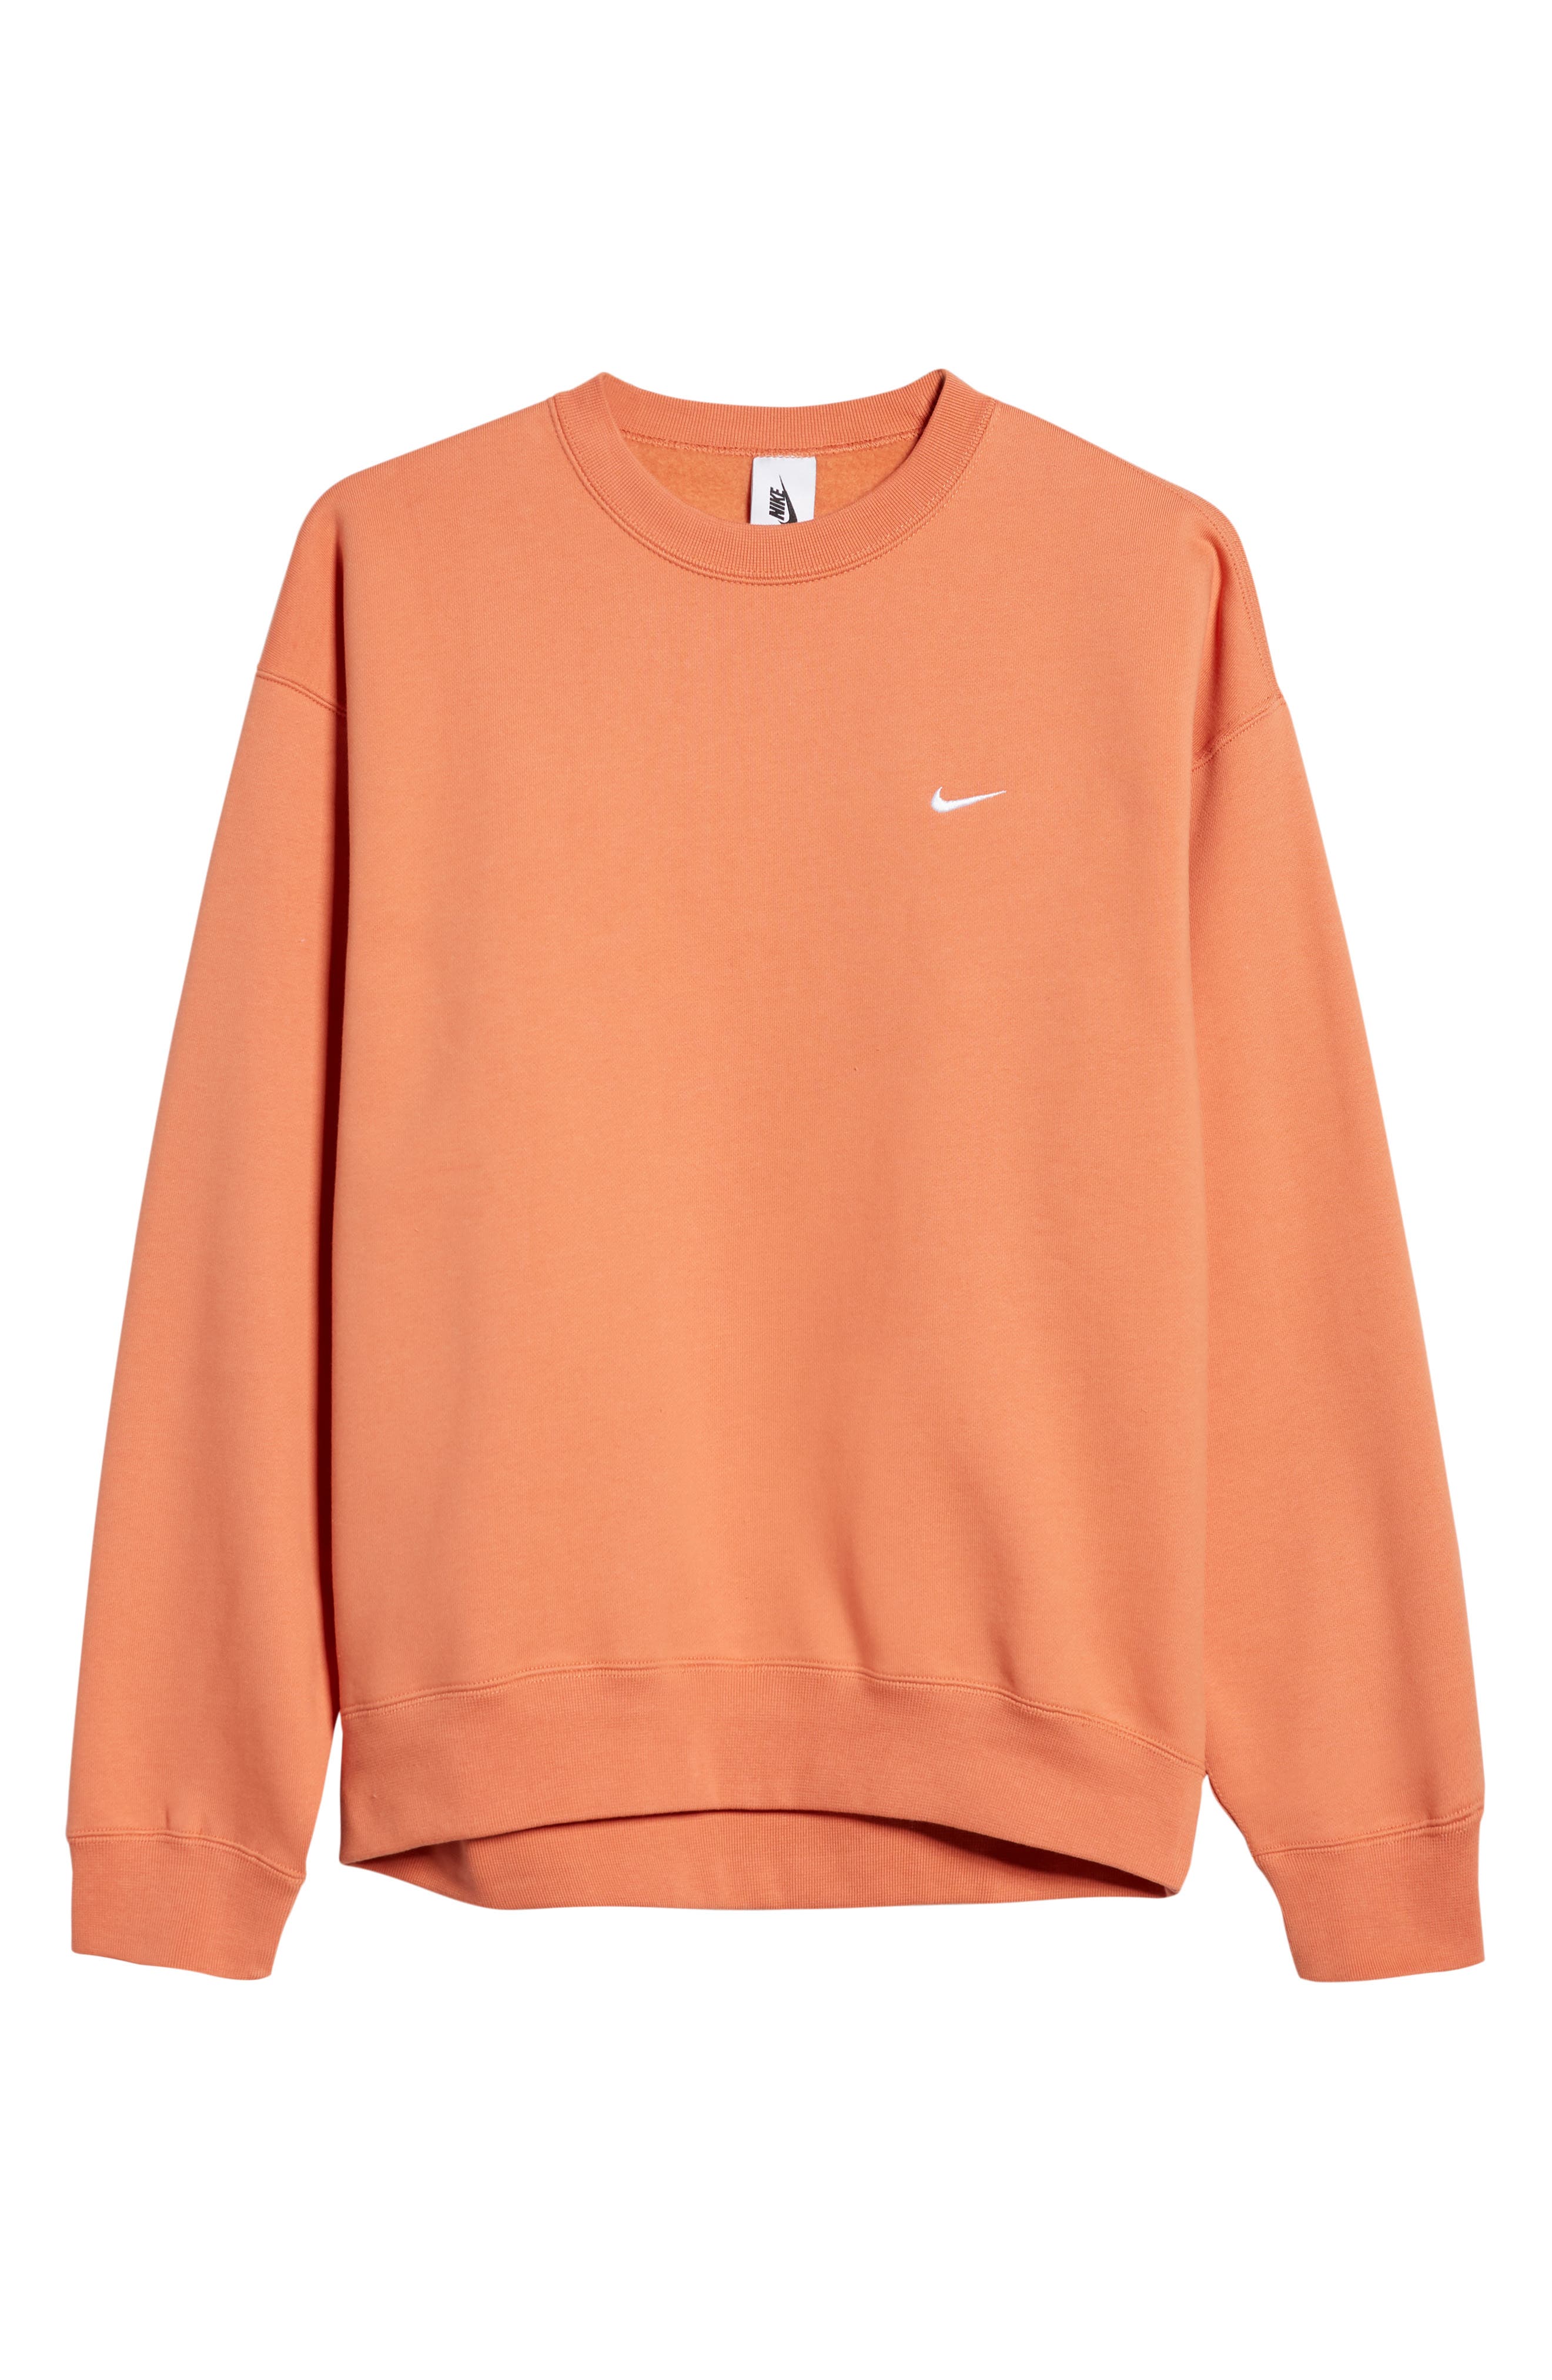 بوق قوة العمل الجاد orange nike sweater 